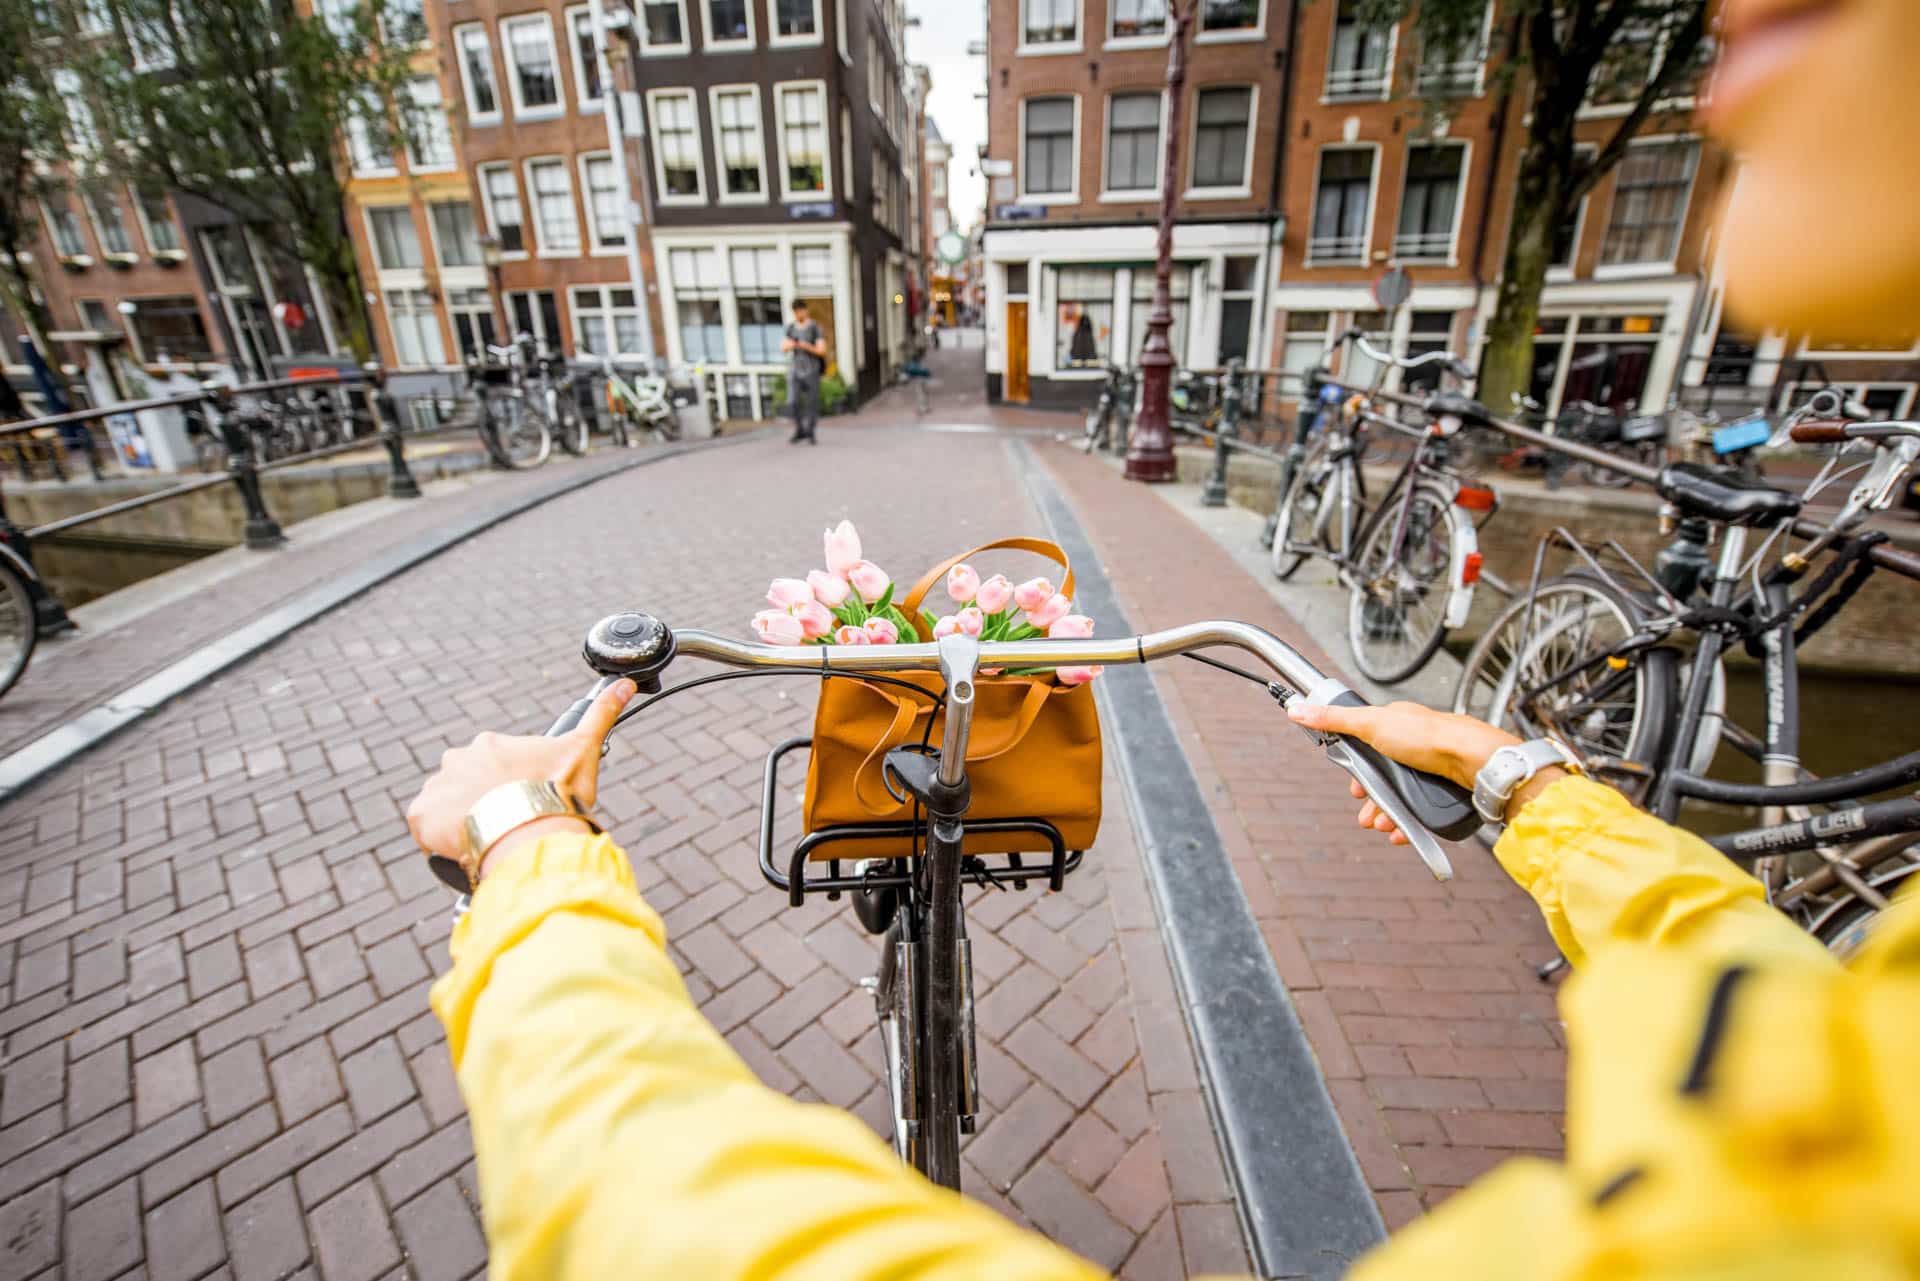 Deux mains sur une bicyclette faisant du vélo à Amtserdam